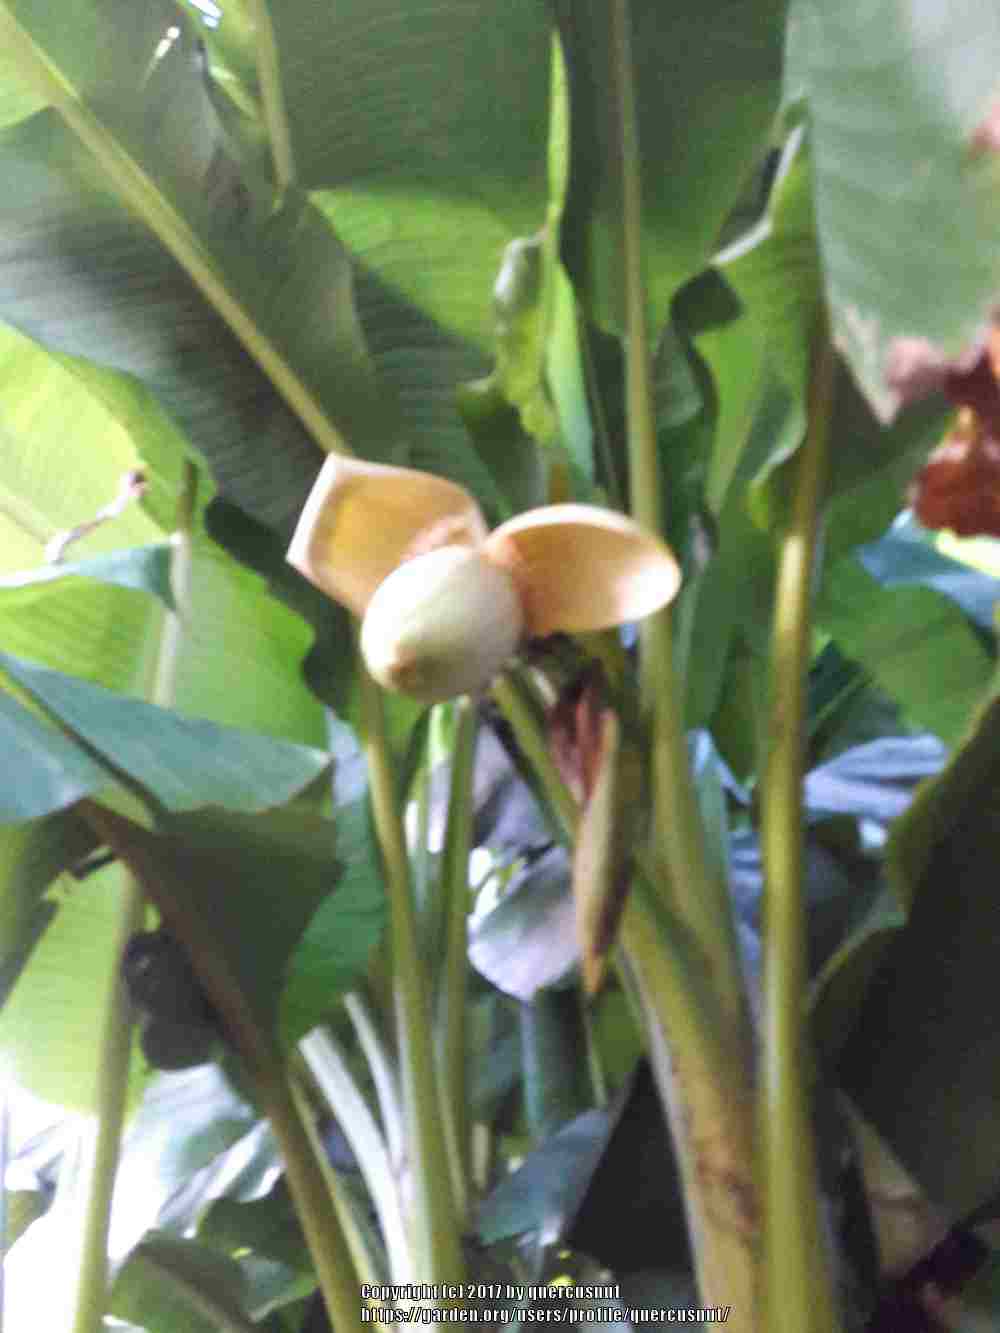 Photo of Japanese Hardy Banana (Musa basjoo) uploaded by quercusnut